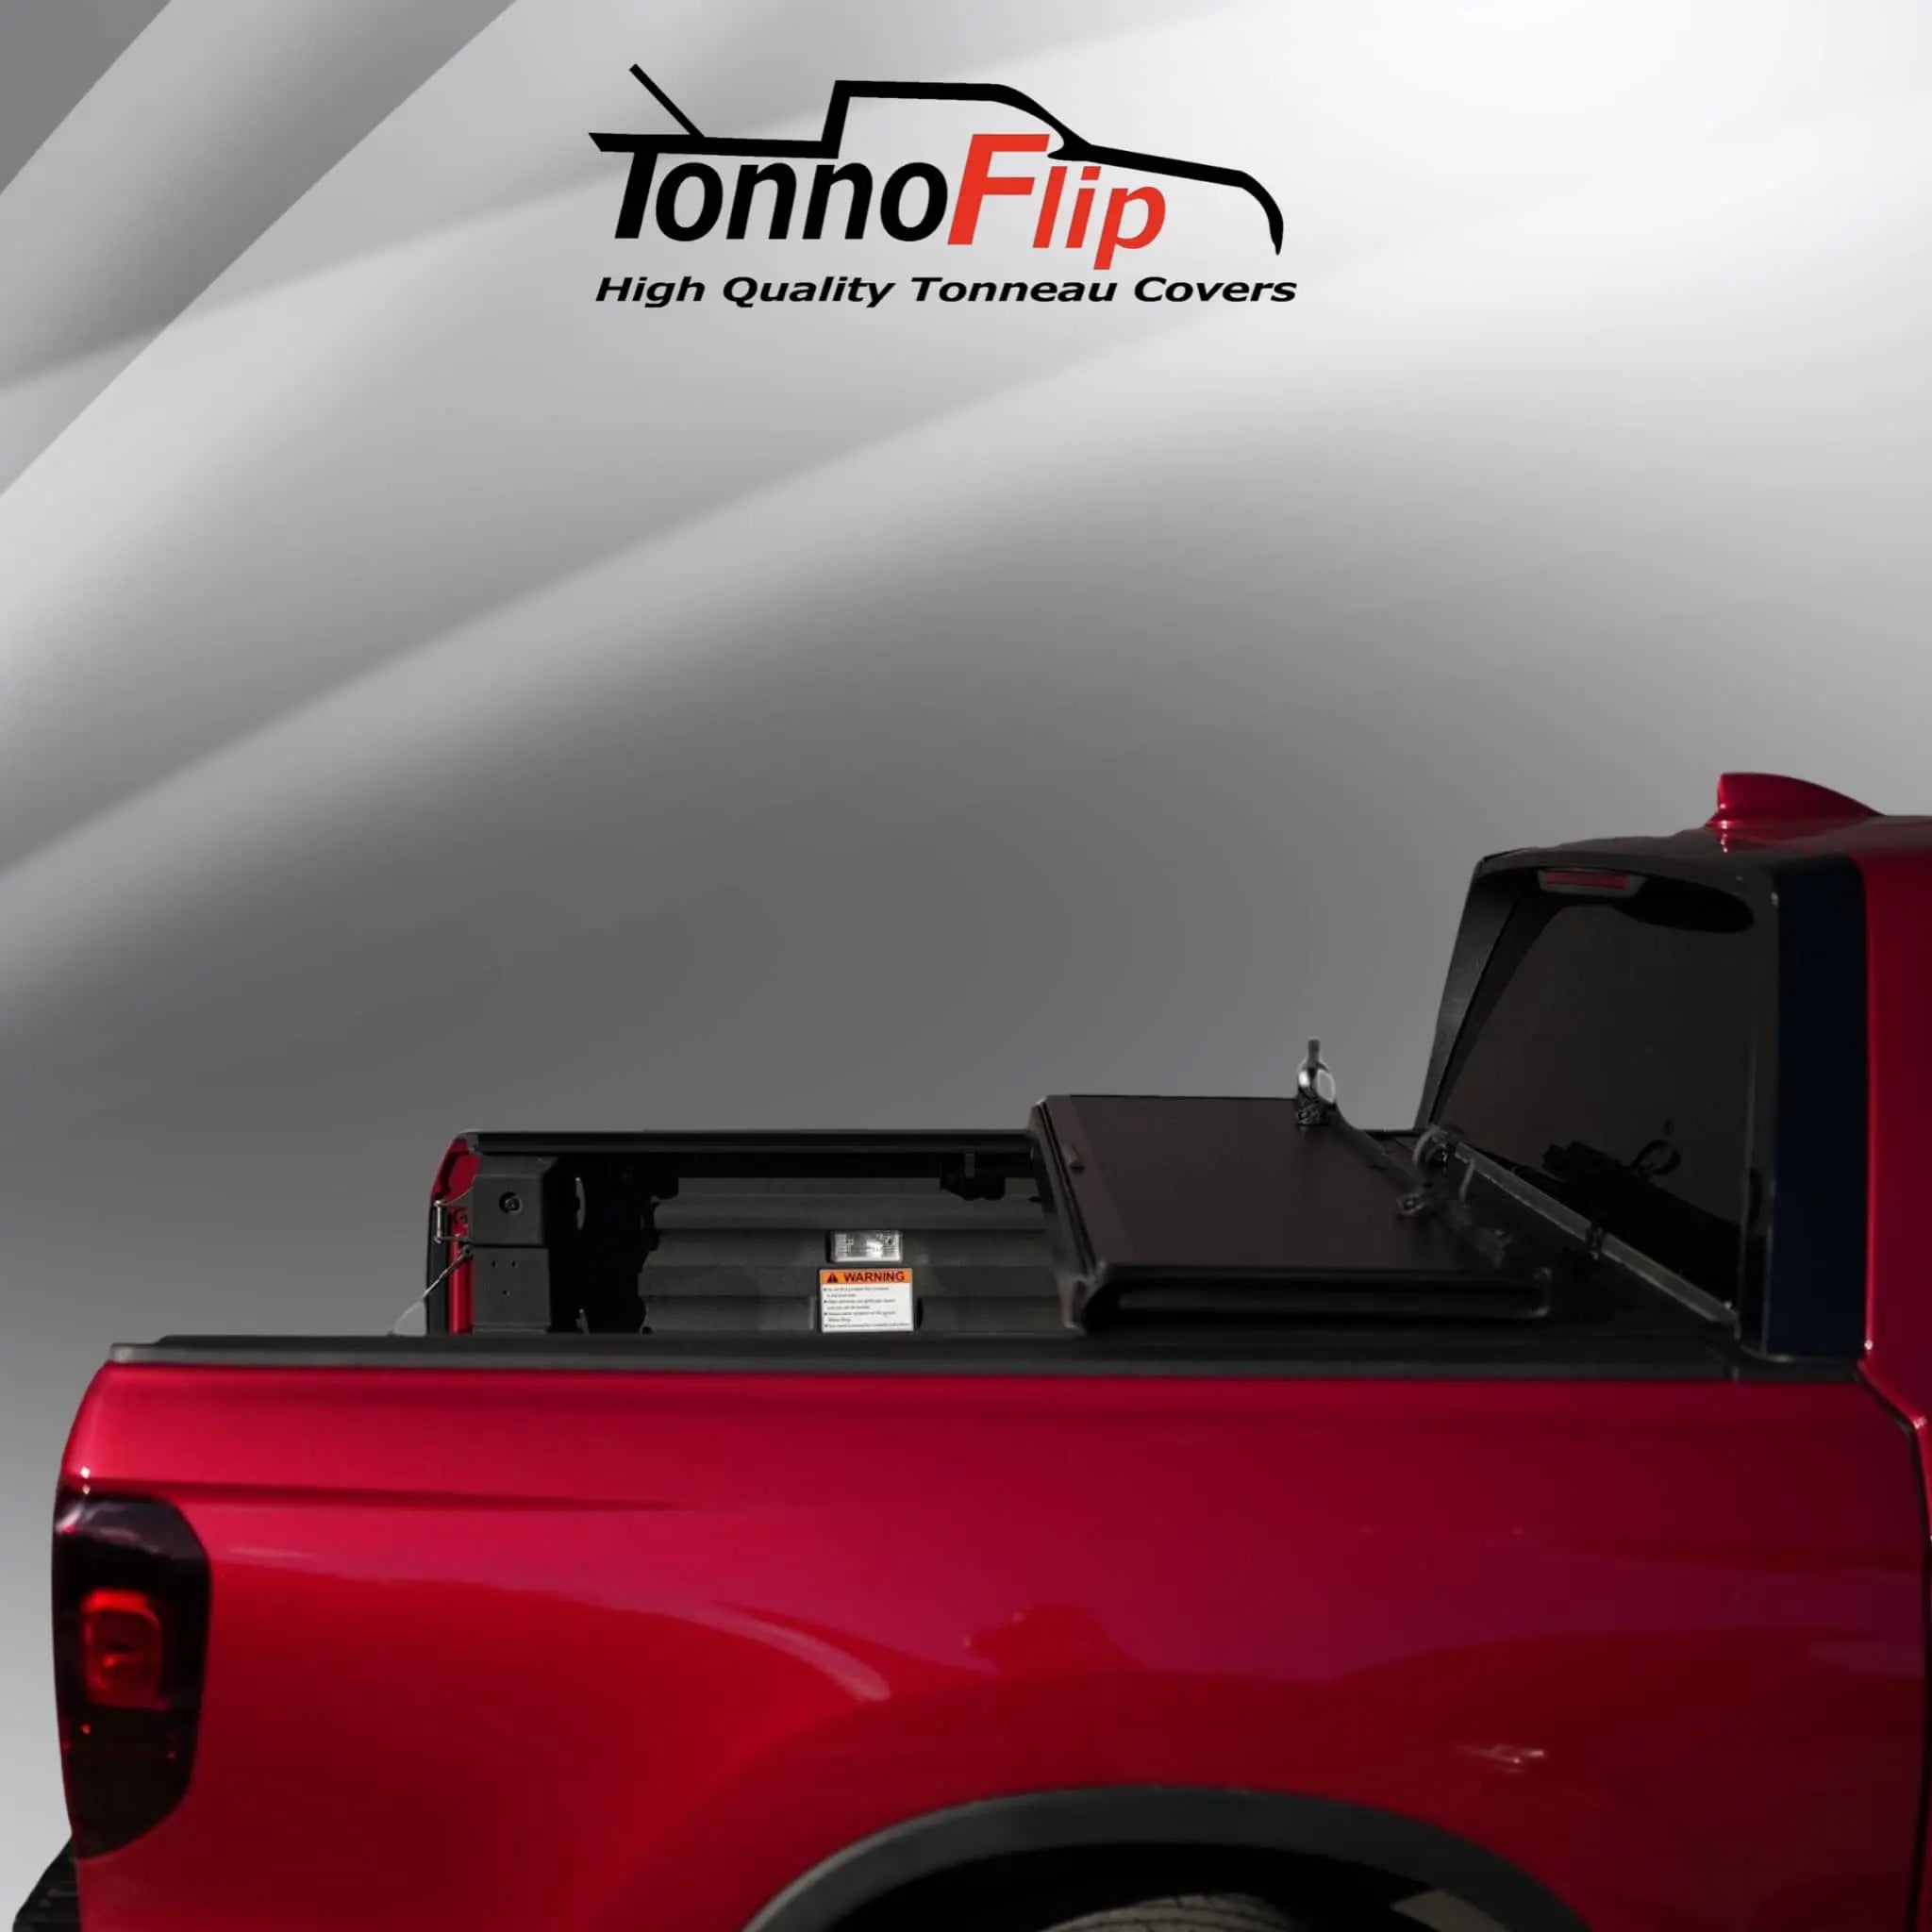 Honda Ridgeline Bed Cover | TonnoFlip TonnoFlip